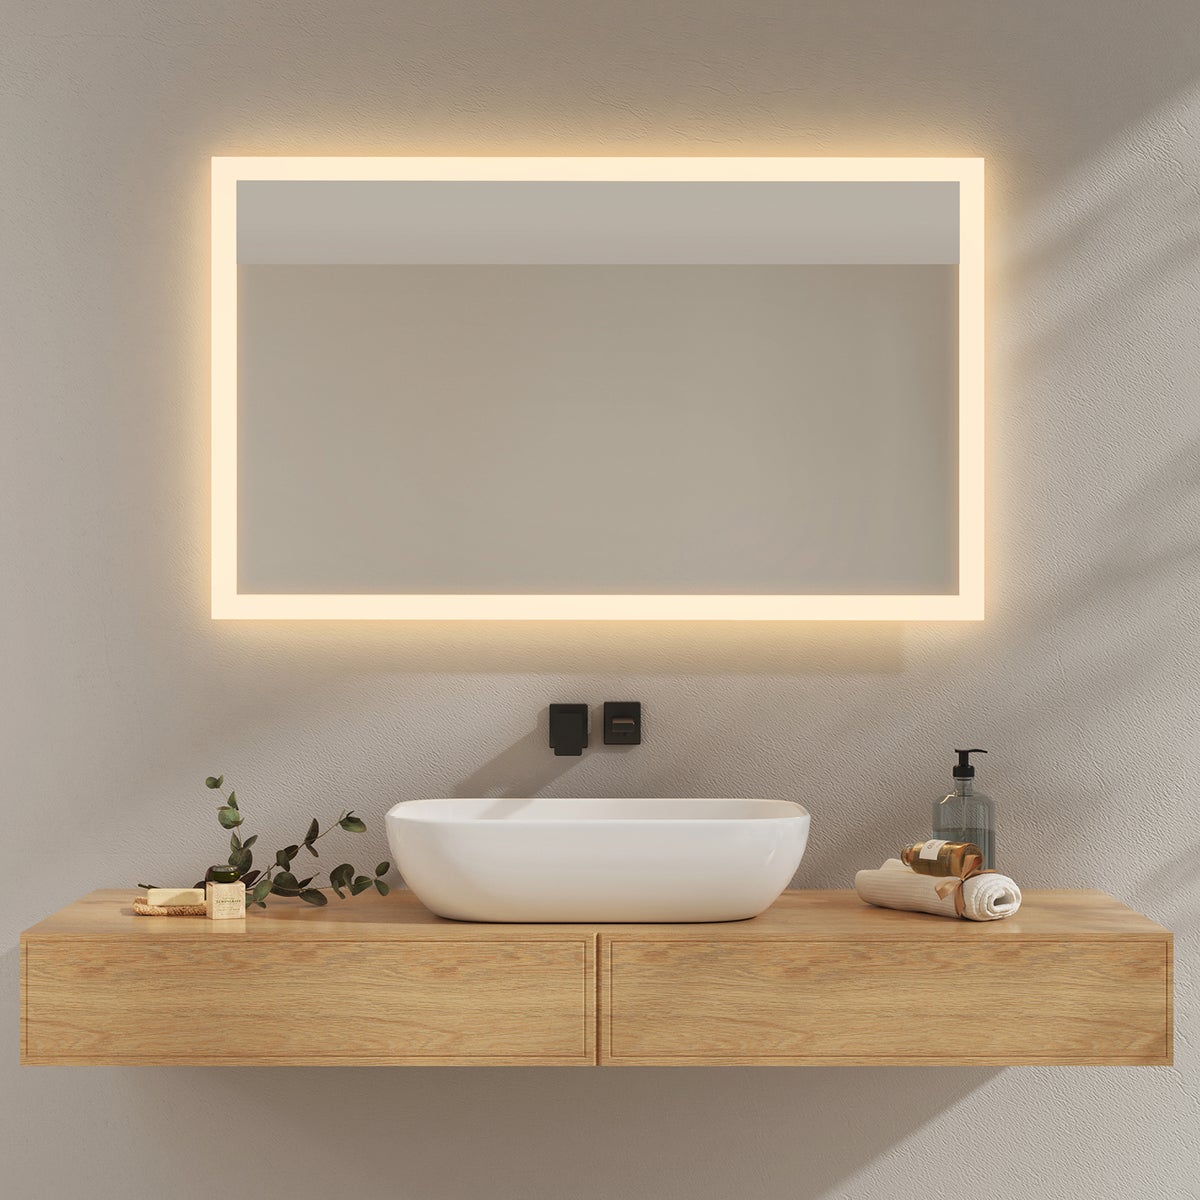 EMKE Badspiegel mit Beleuchtung, 100x60cm, Kaltweißes Licht